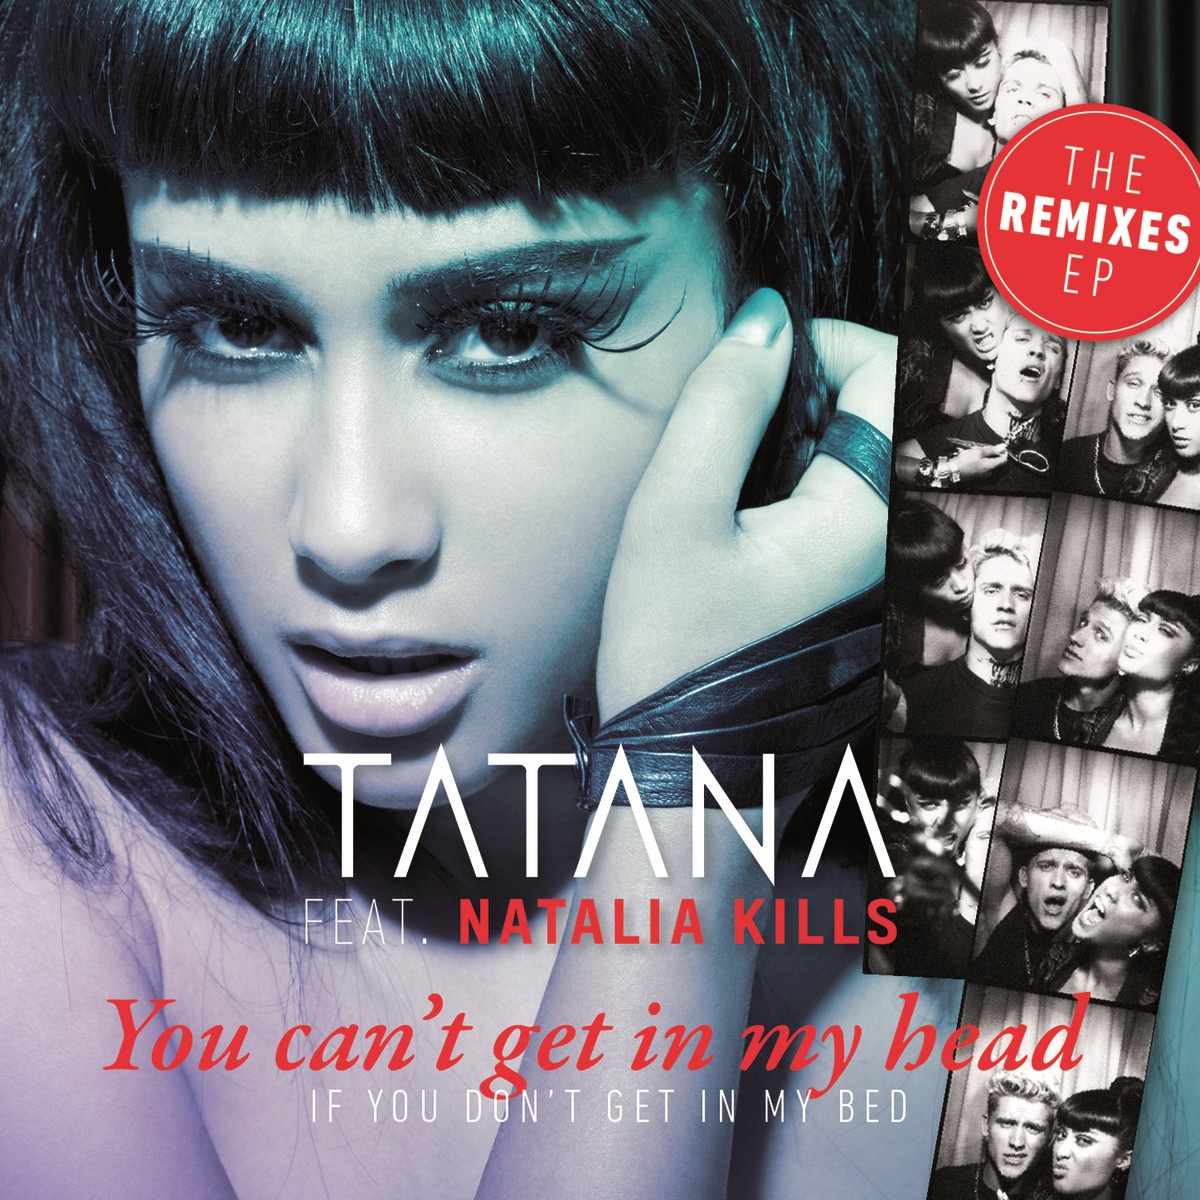 You Can't Get in My Head (If You Don't Get in My Bed) [feat. Natalia Kills] [Audiolife Remix]